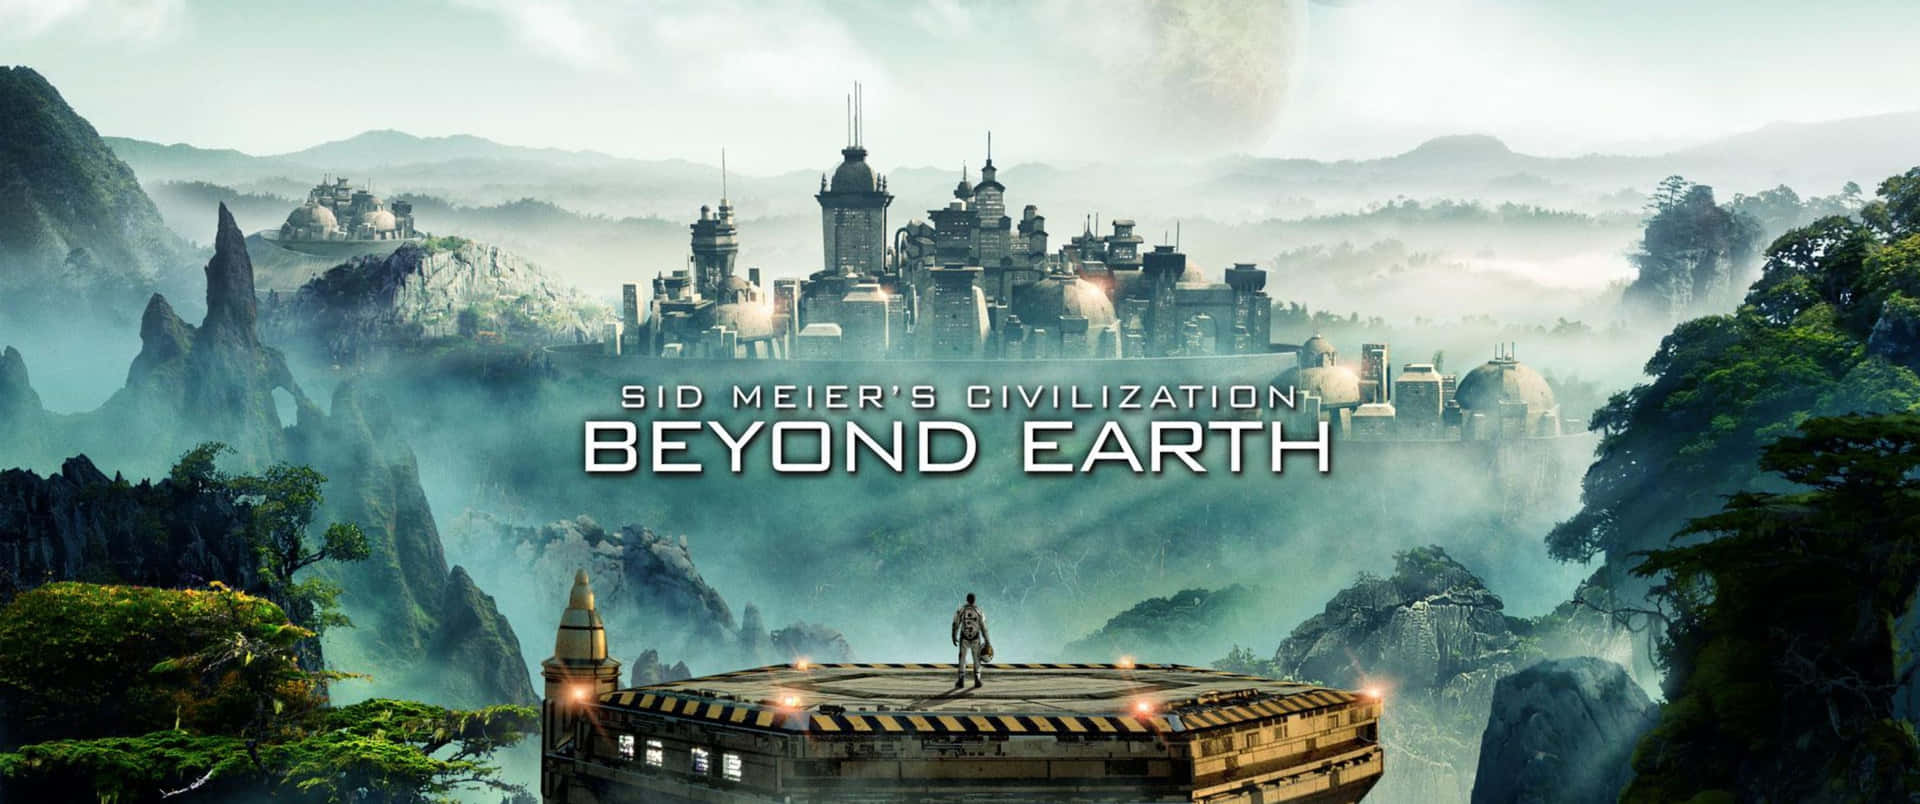 Piattaformad'oro Sfondo Civilization Beyond Earth 3440x1440p